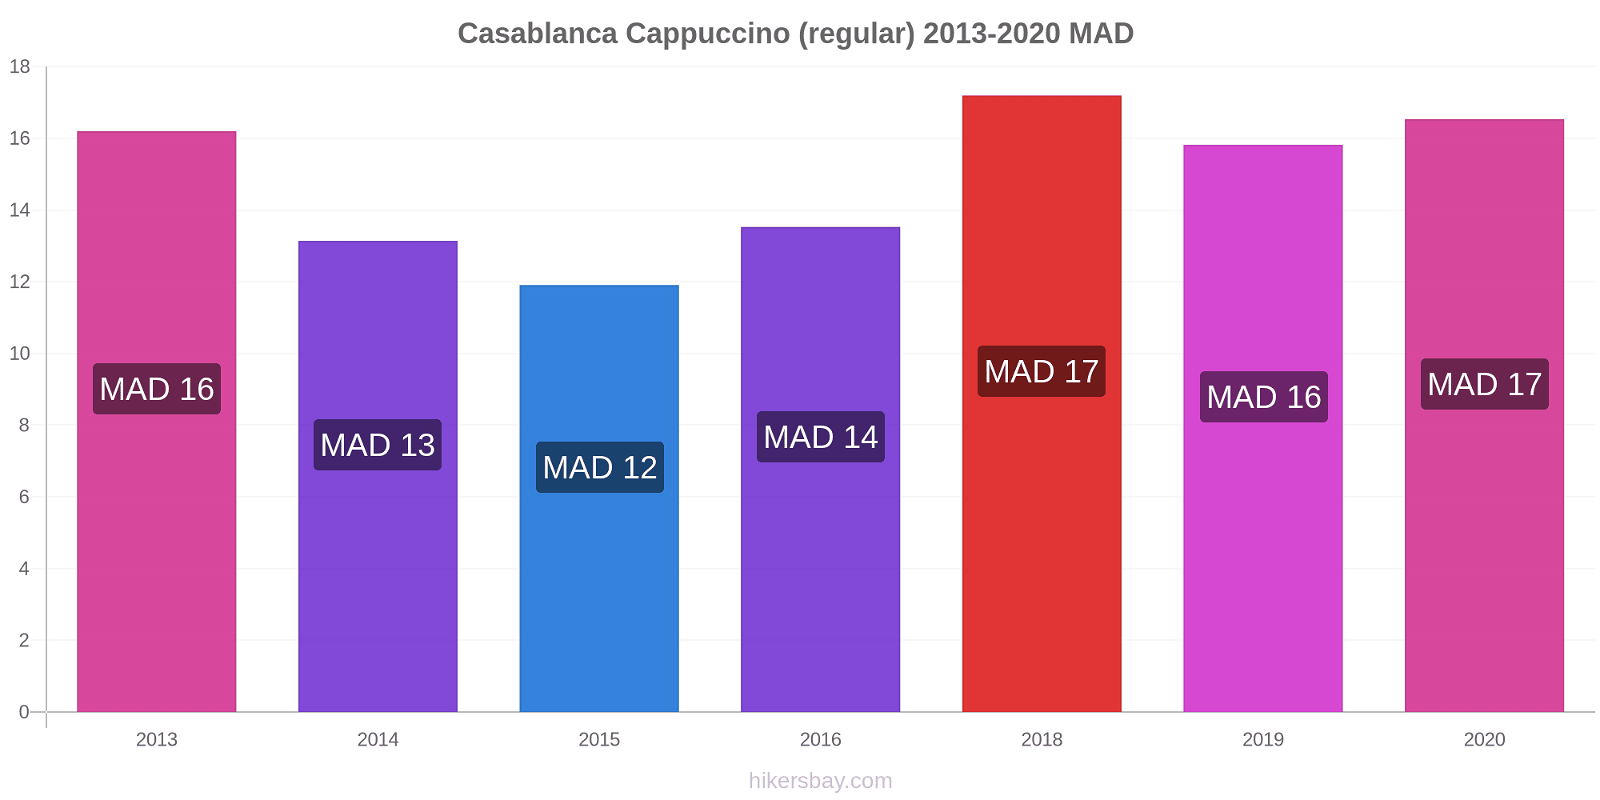 Casablanca price changes Cappuccino (regular) hikersbay.com